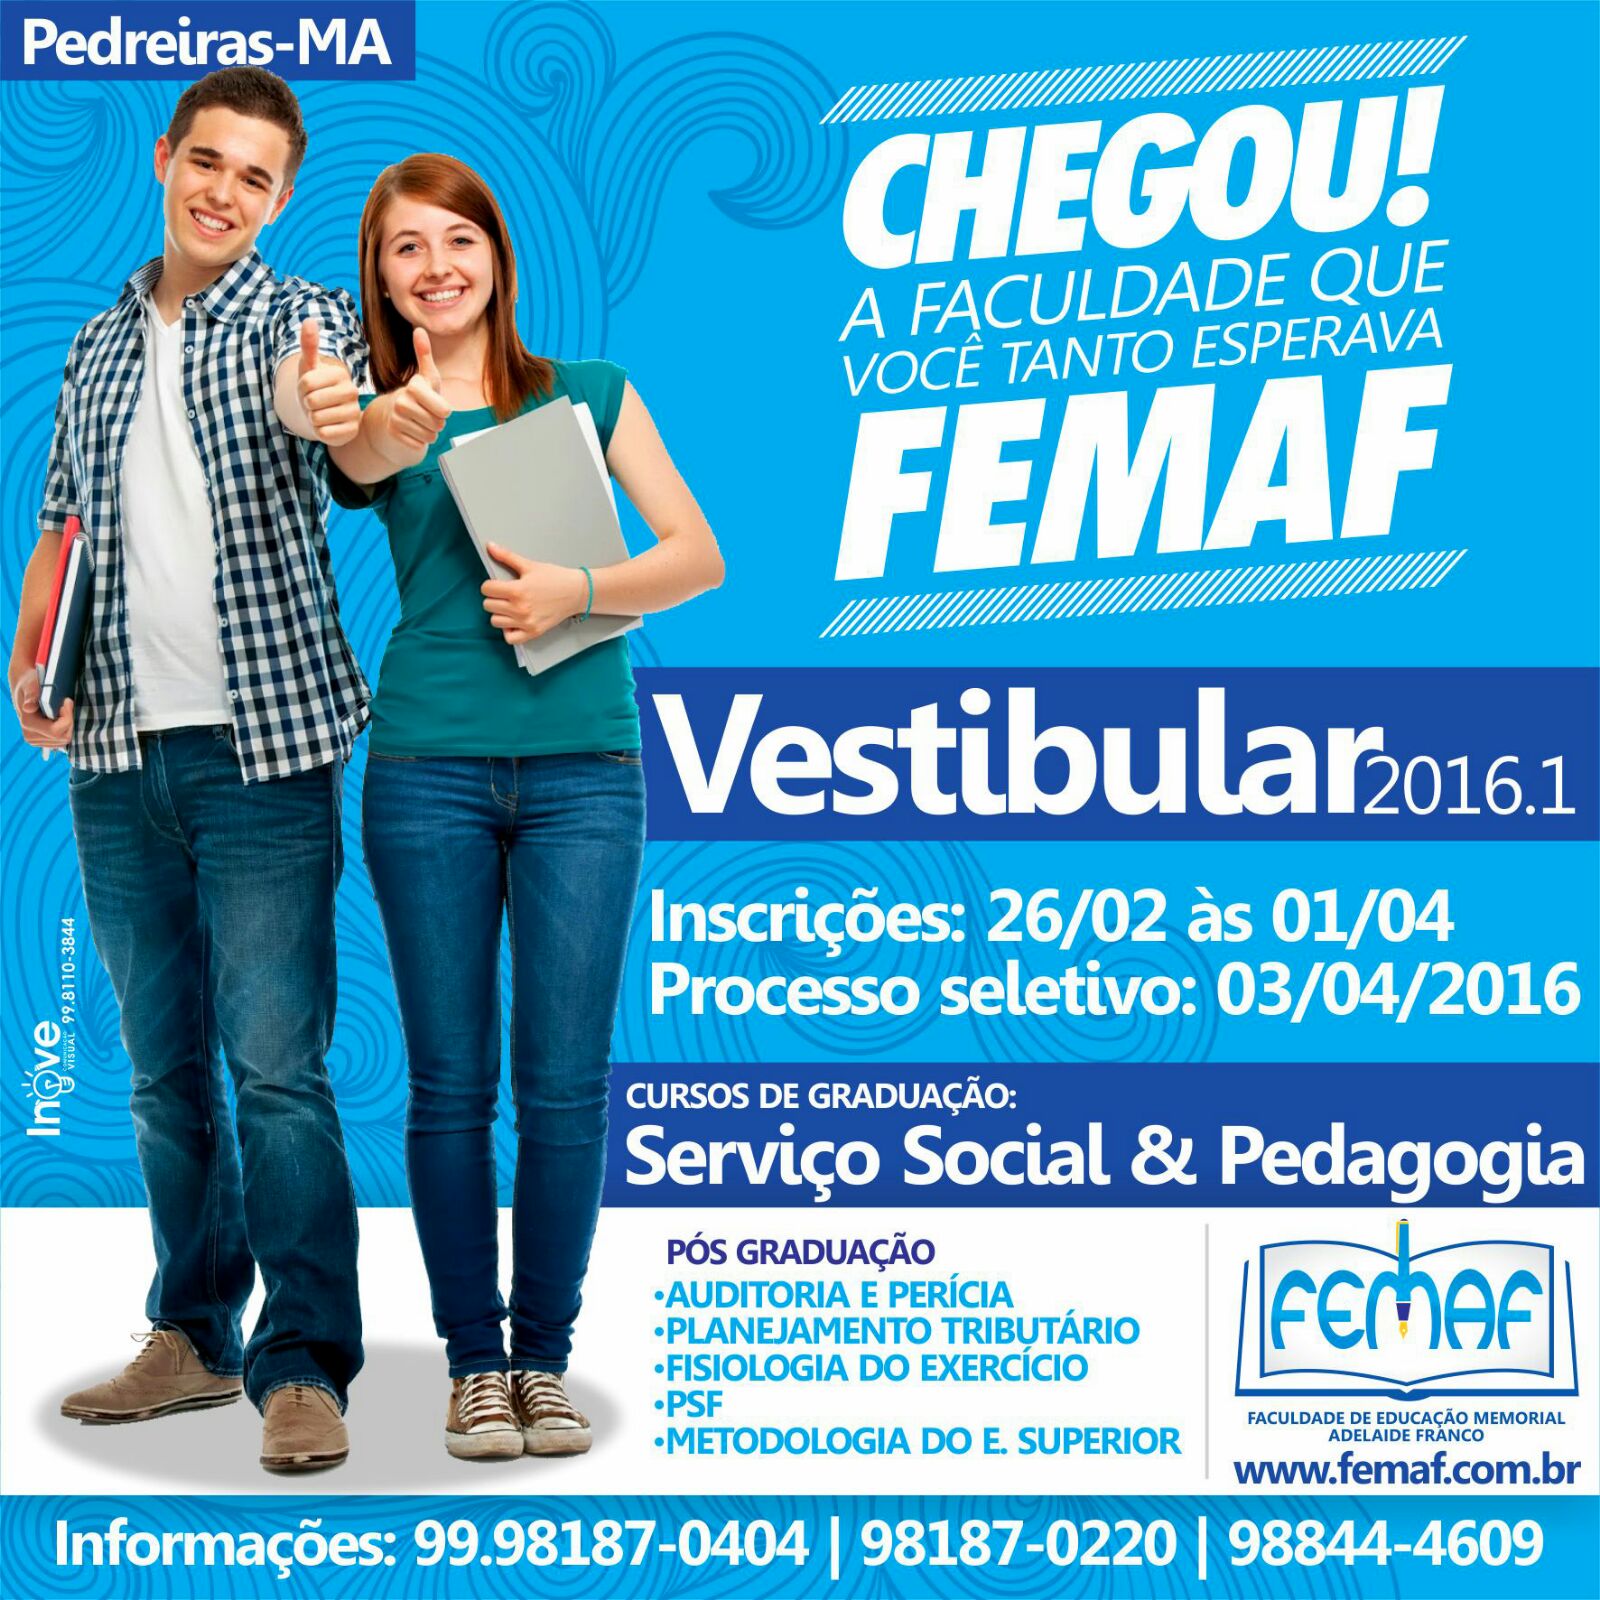 FEMAF - PEDREIRAS - MA